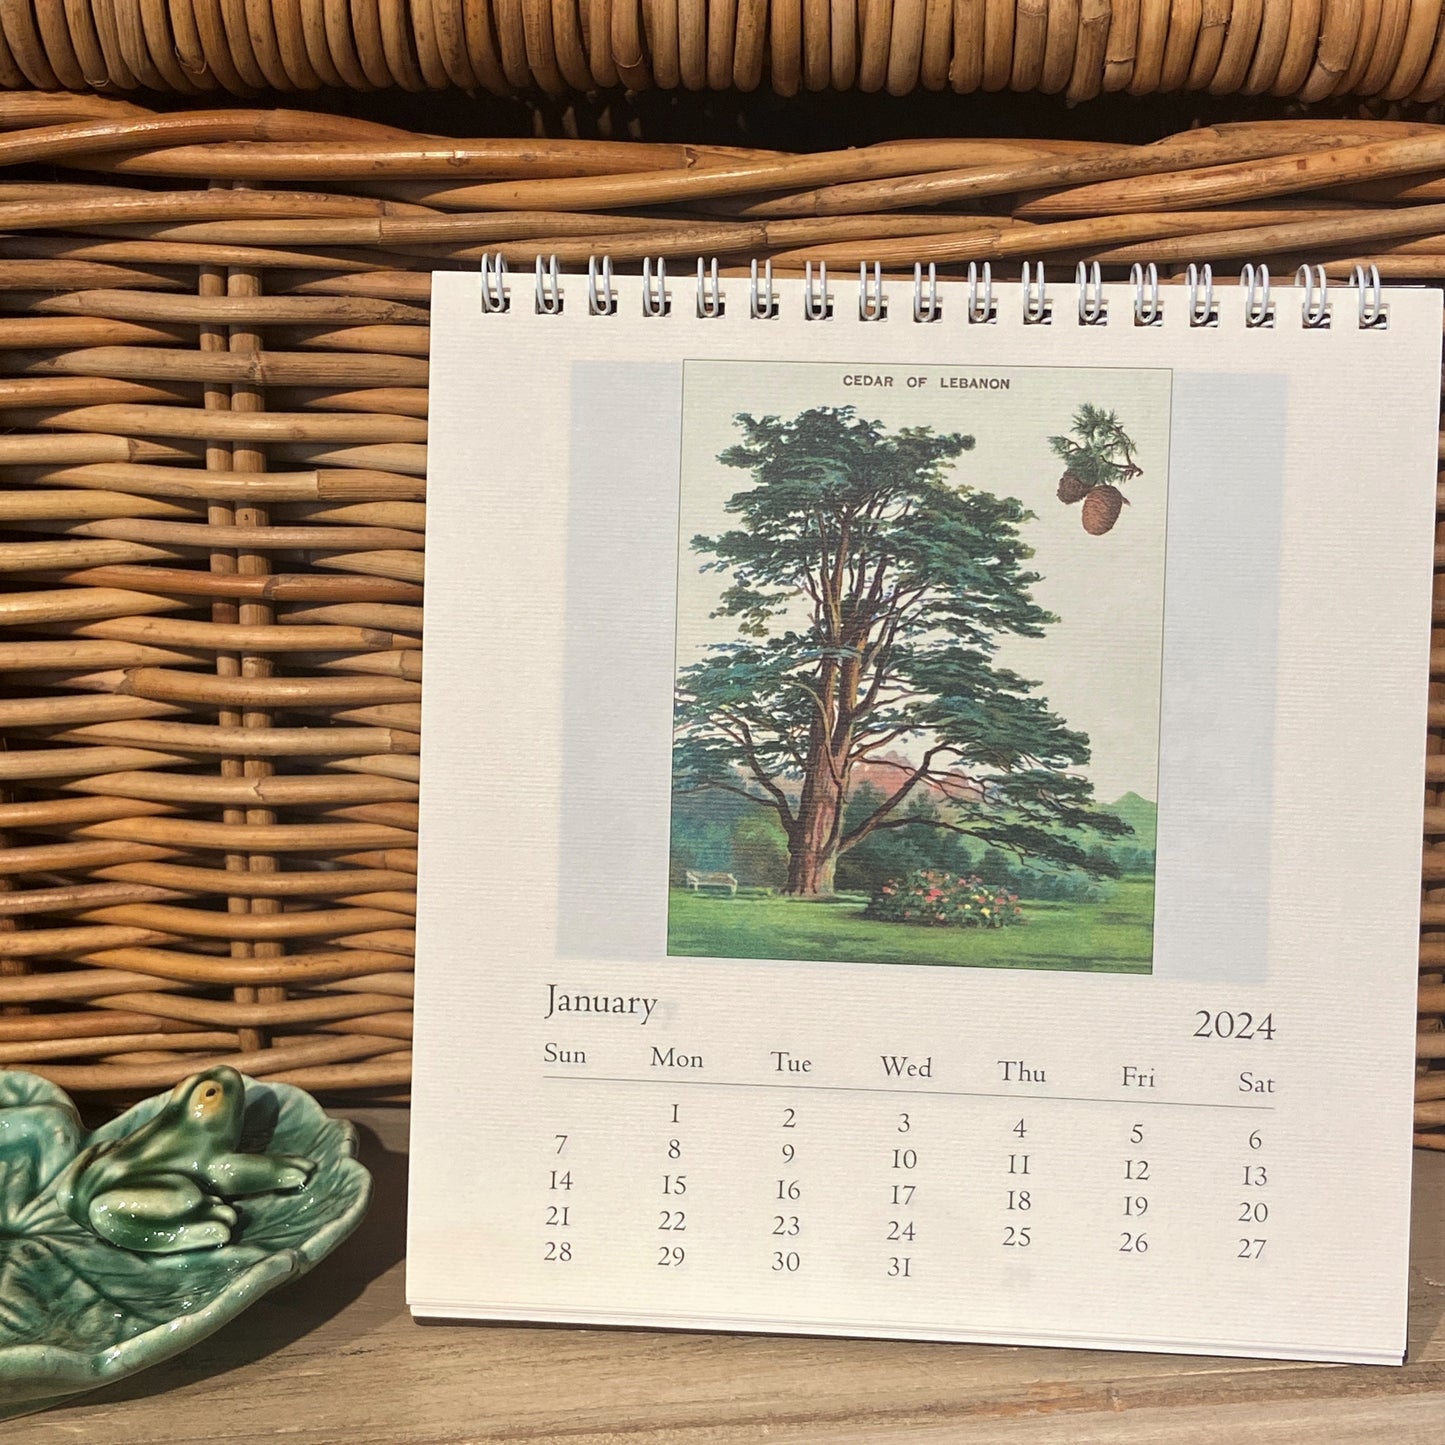 Arboretum 2024 Desk Calendar